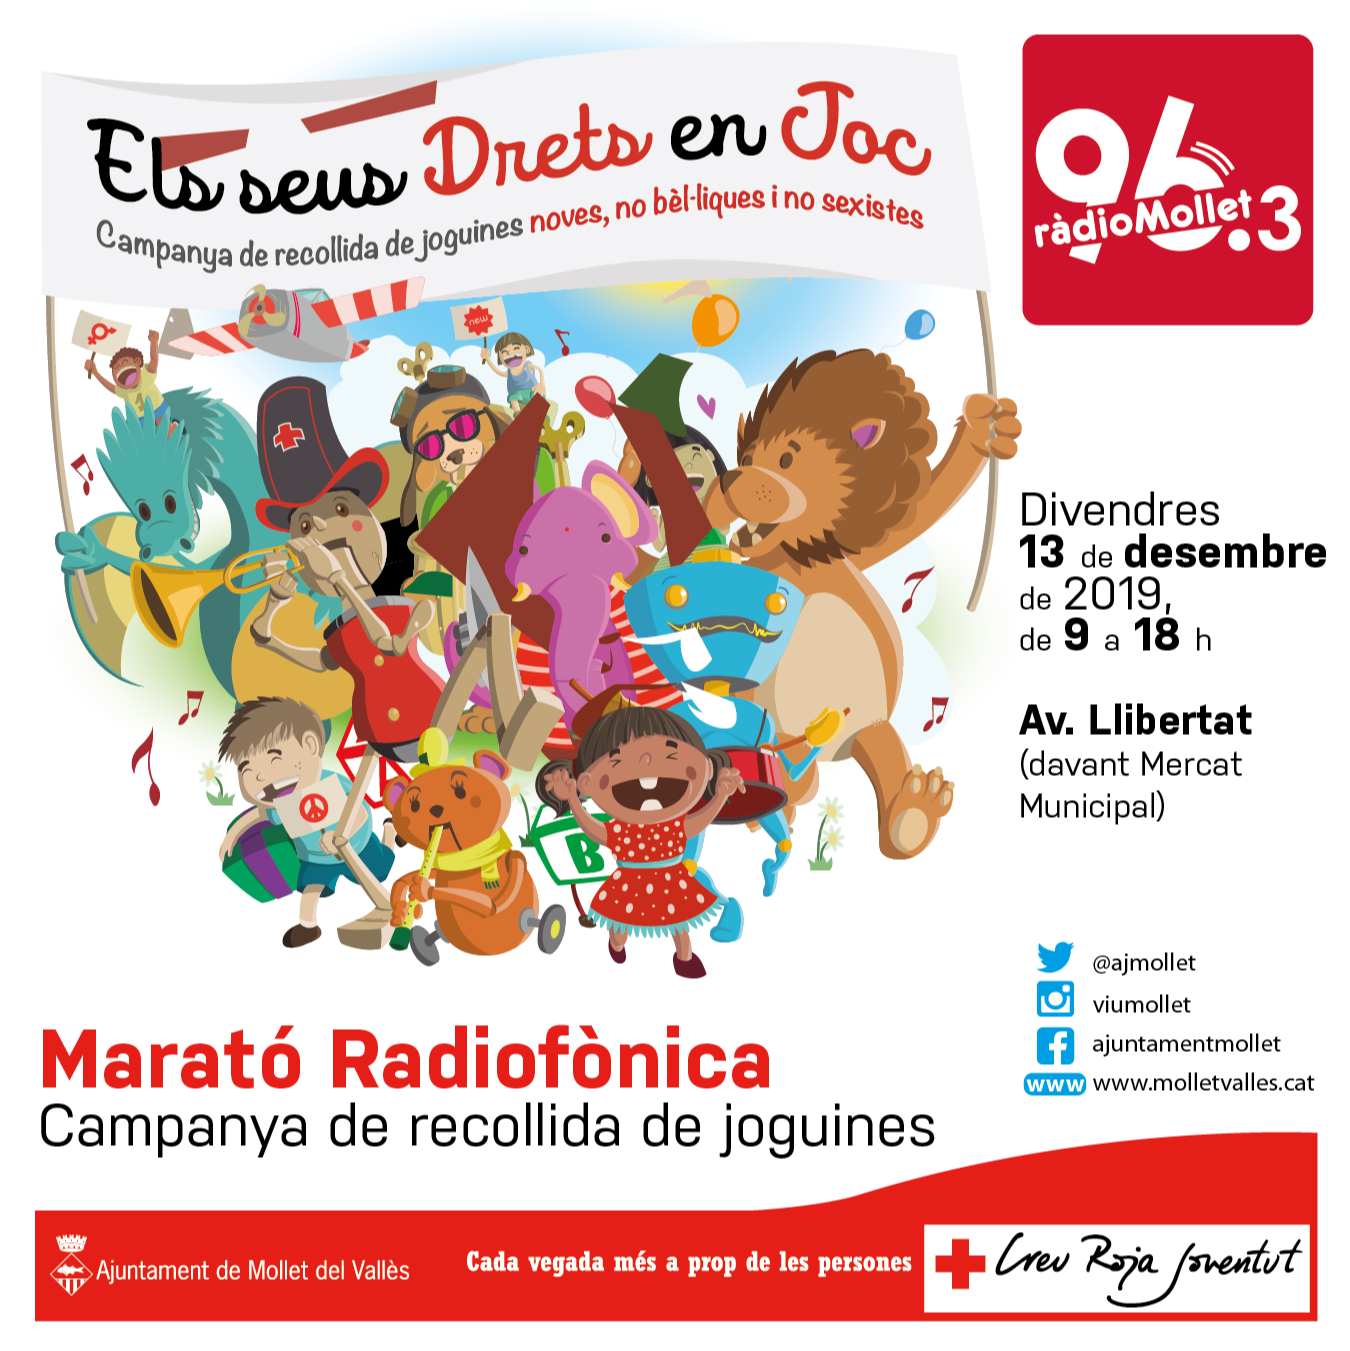 Ràdio Mollet organitza la dotzena marató radiofònica de recollida de joguines